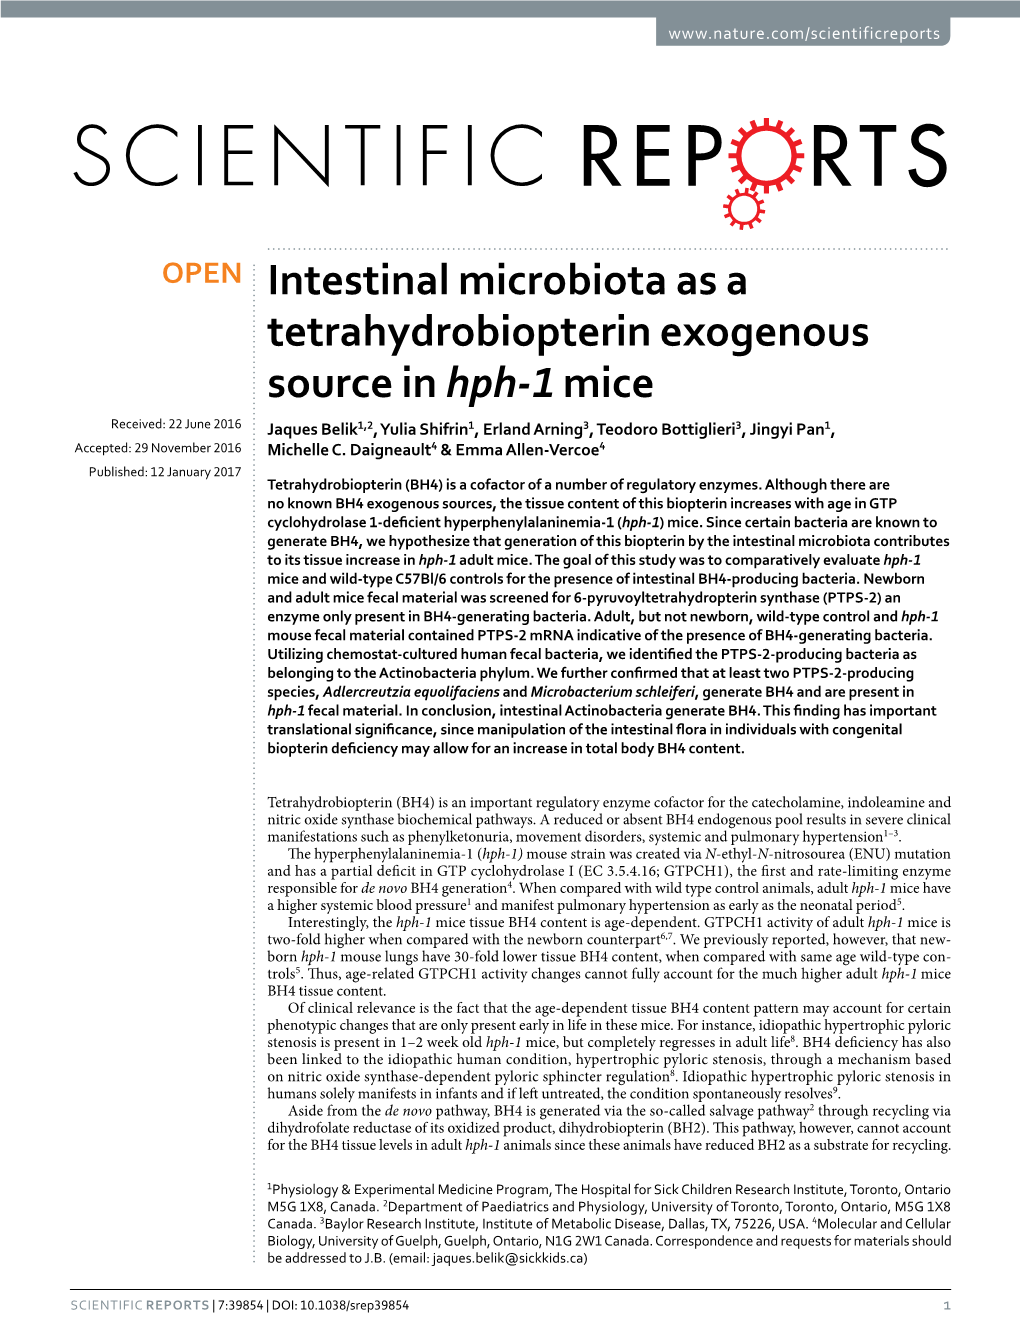 Intestinal Microbiota As a Tetrahydrobiopterin Exogenous